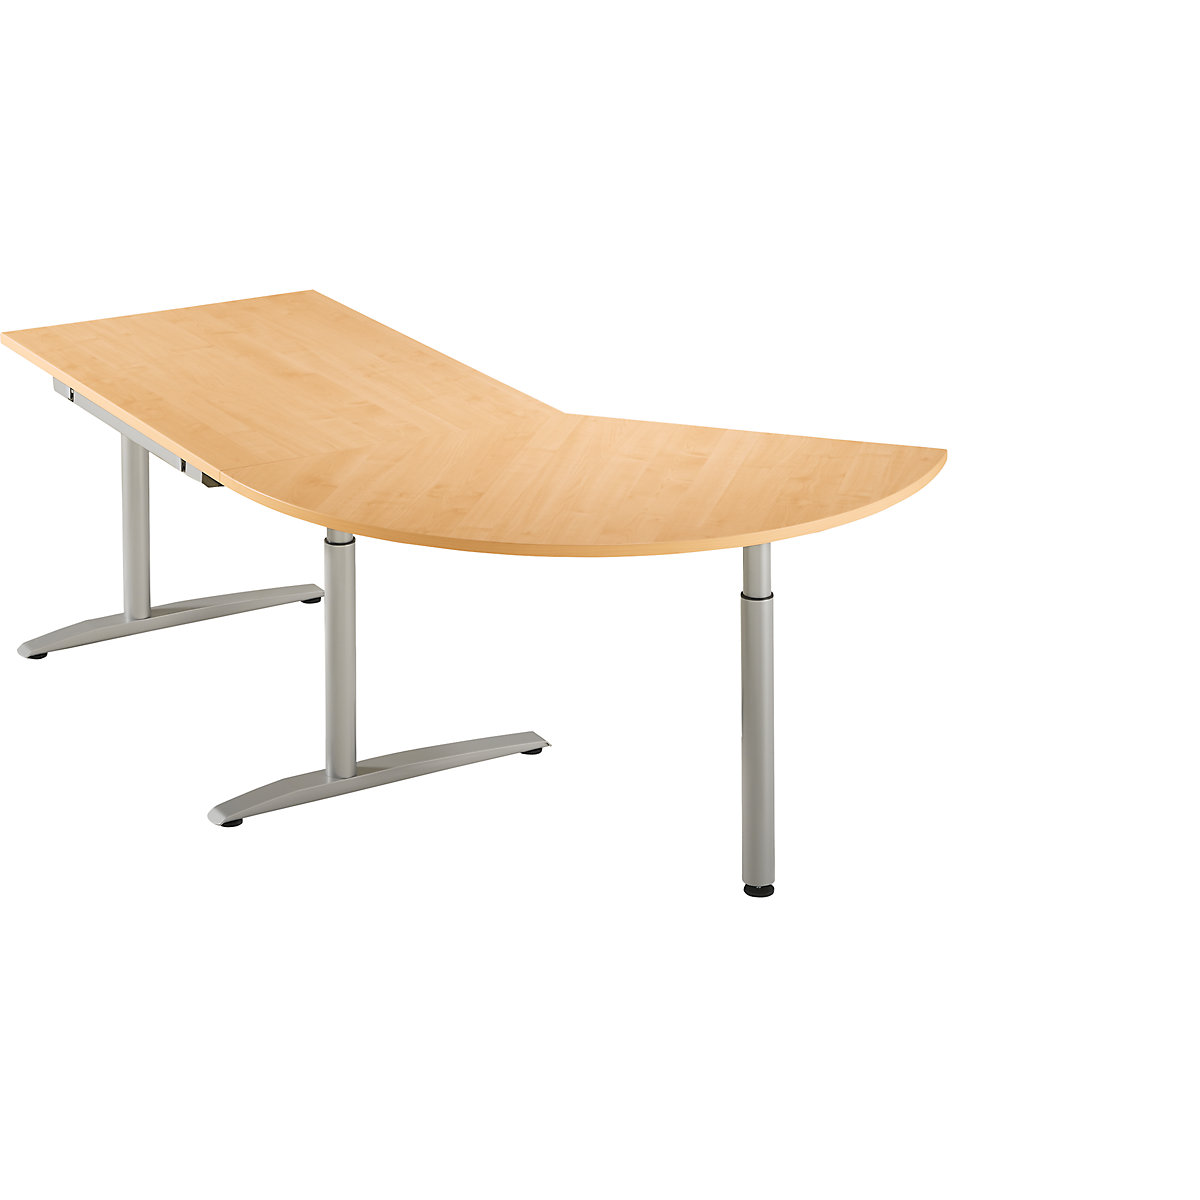 Přístavný stůl, výškově přestavitelný v rozsahu 650 – 850 mm HANNA, 3/8 kruhu, s opěrnou nohou, bukový dekor-5